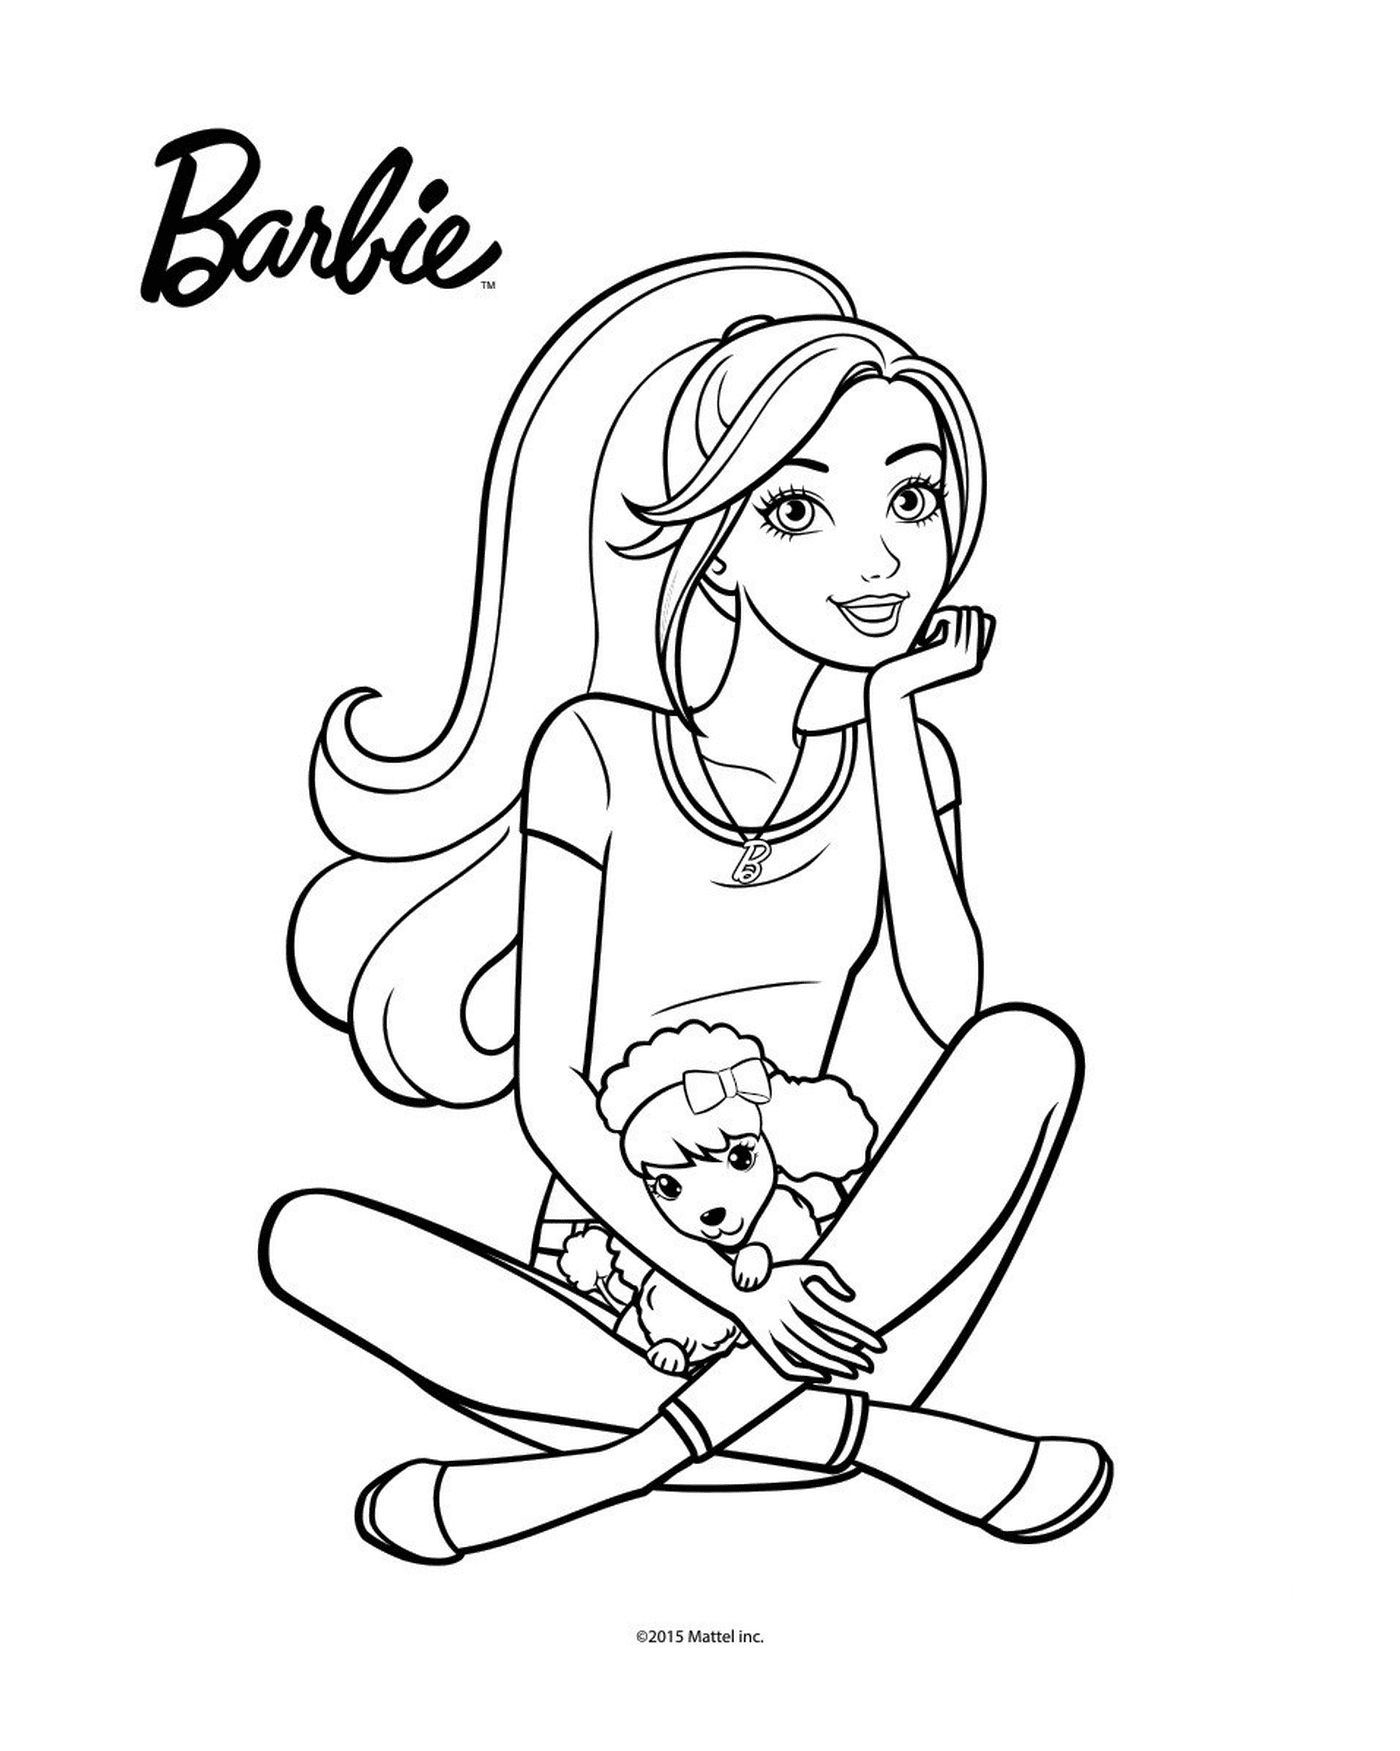  Barbie sentada no chão segurando uma boneca 